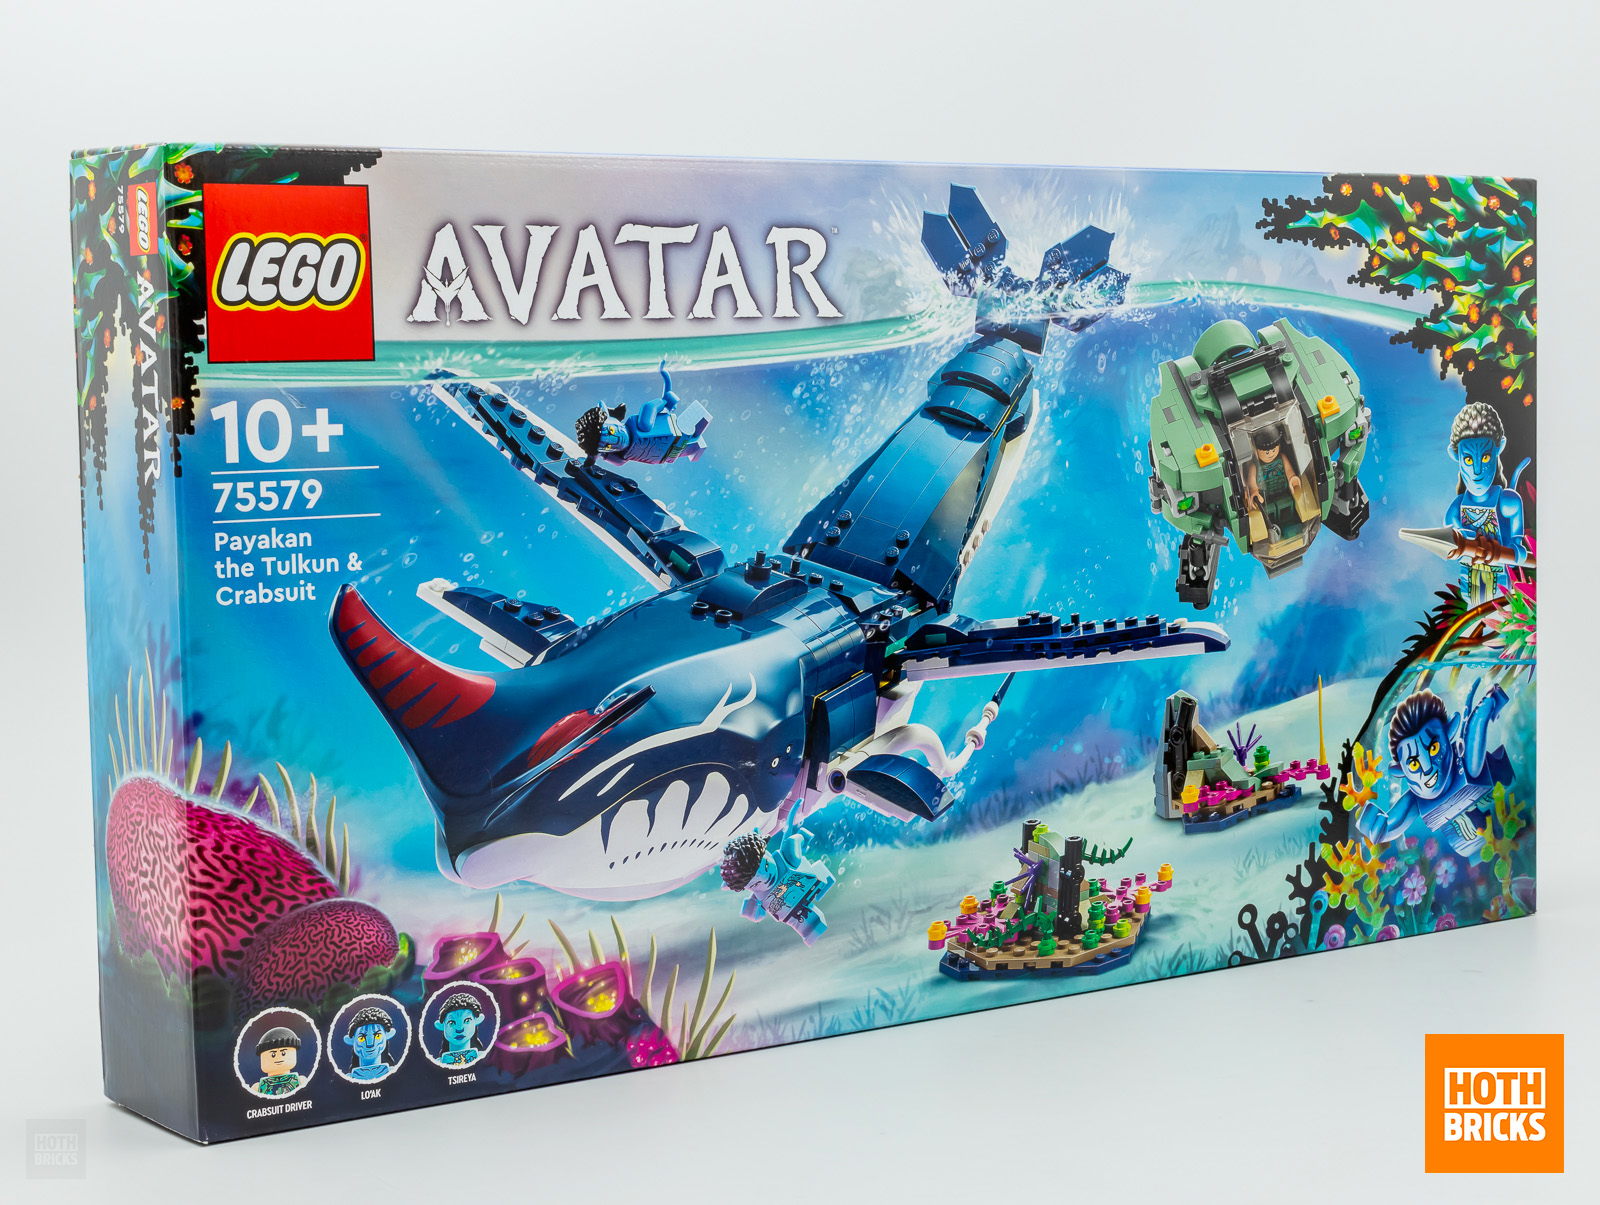 Kilpailu: kopio LEGO Avatar 75579 Payakan The Tulkun & Crabsuit setistä voittaa!